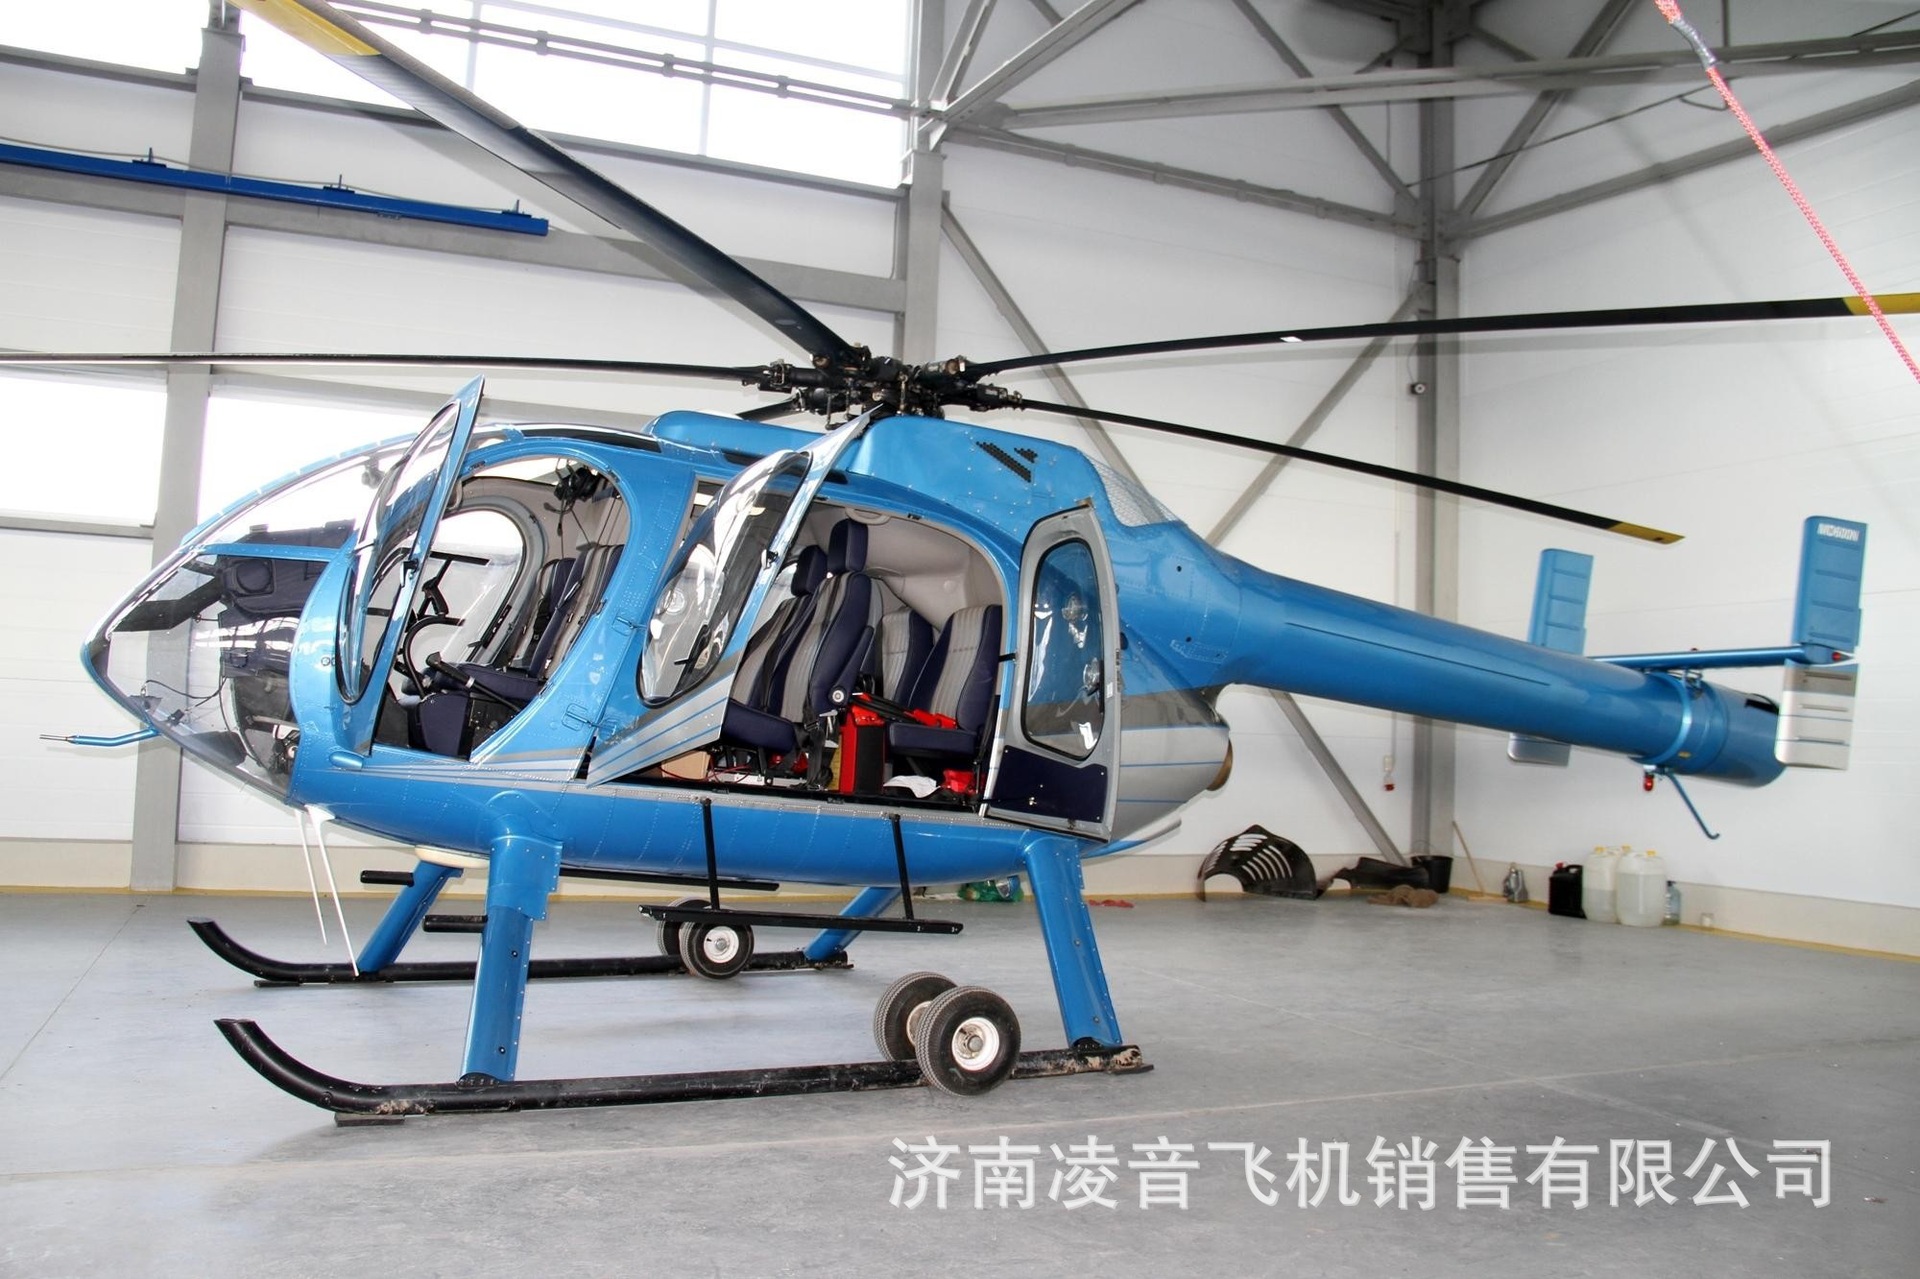 杭州私人直升机4s店 麦道600n直升机 杭州民用直升机经销商报价